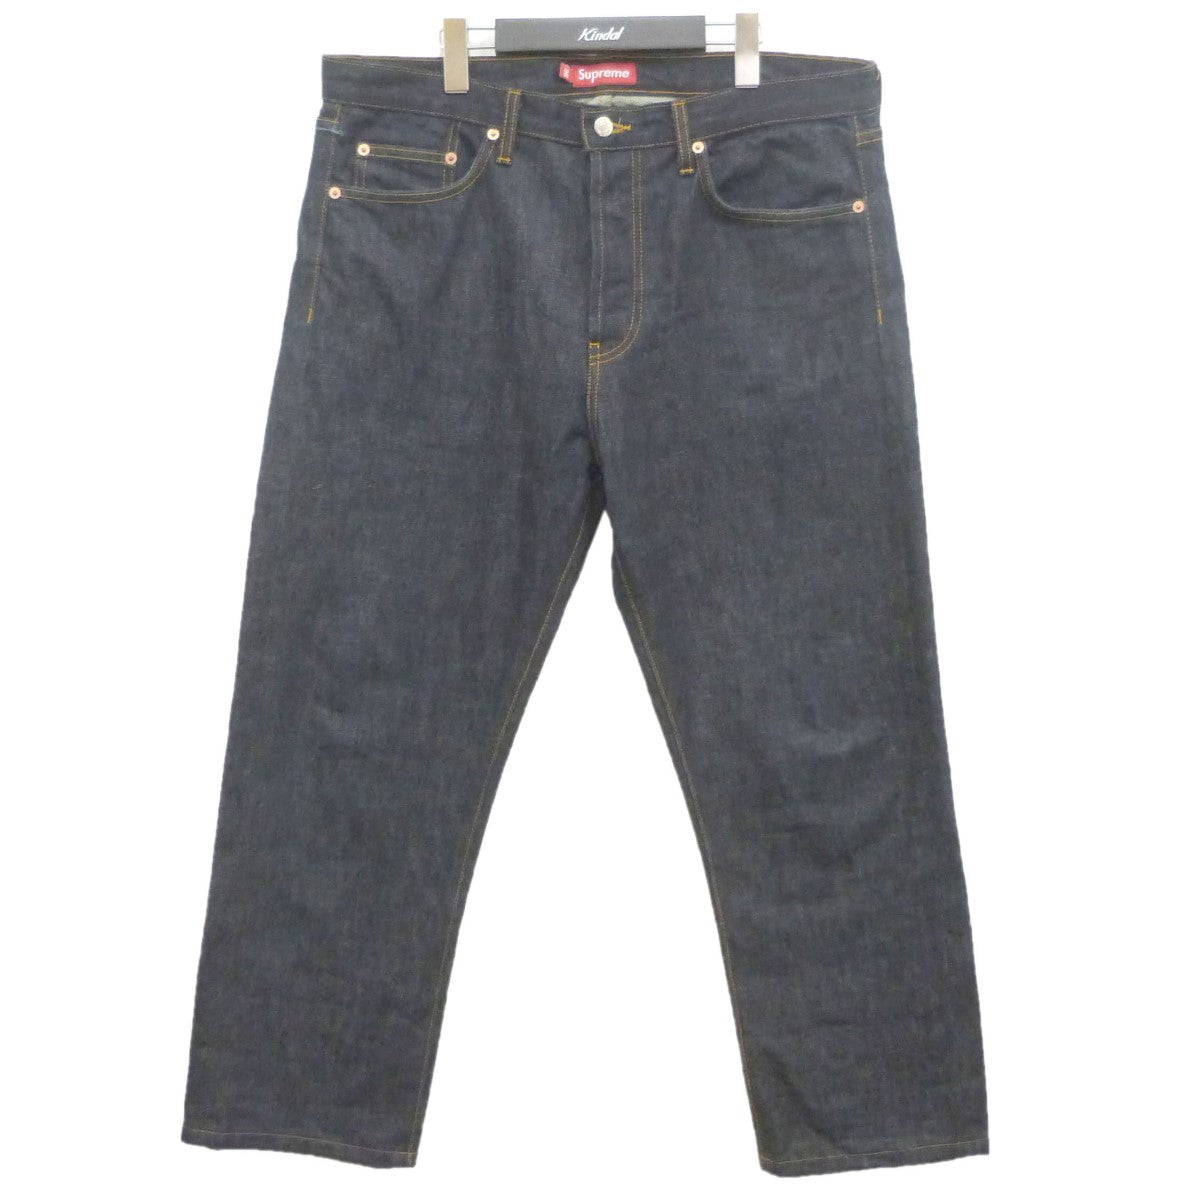 SUPREME(シュプリーム) 「Rigid Slim Jeans」 リジッドデニムパンツ 